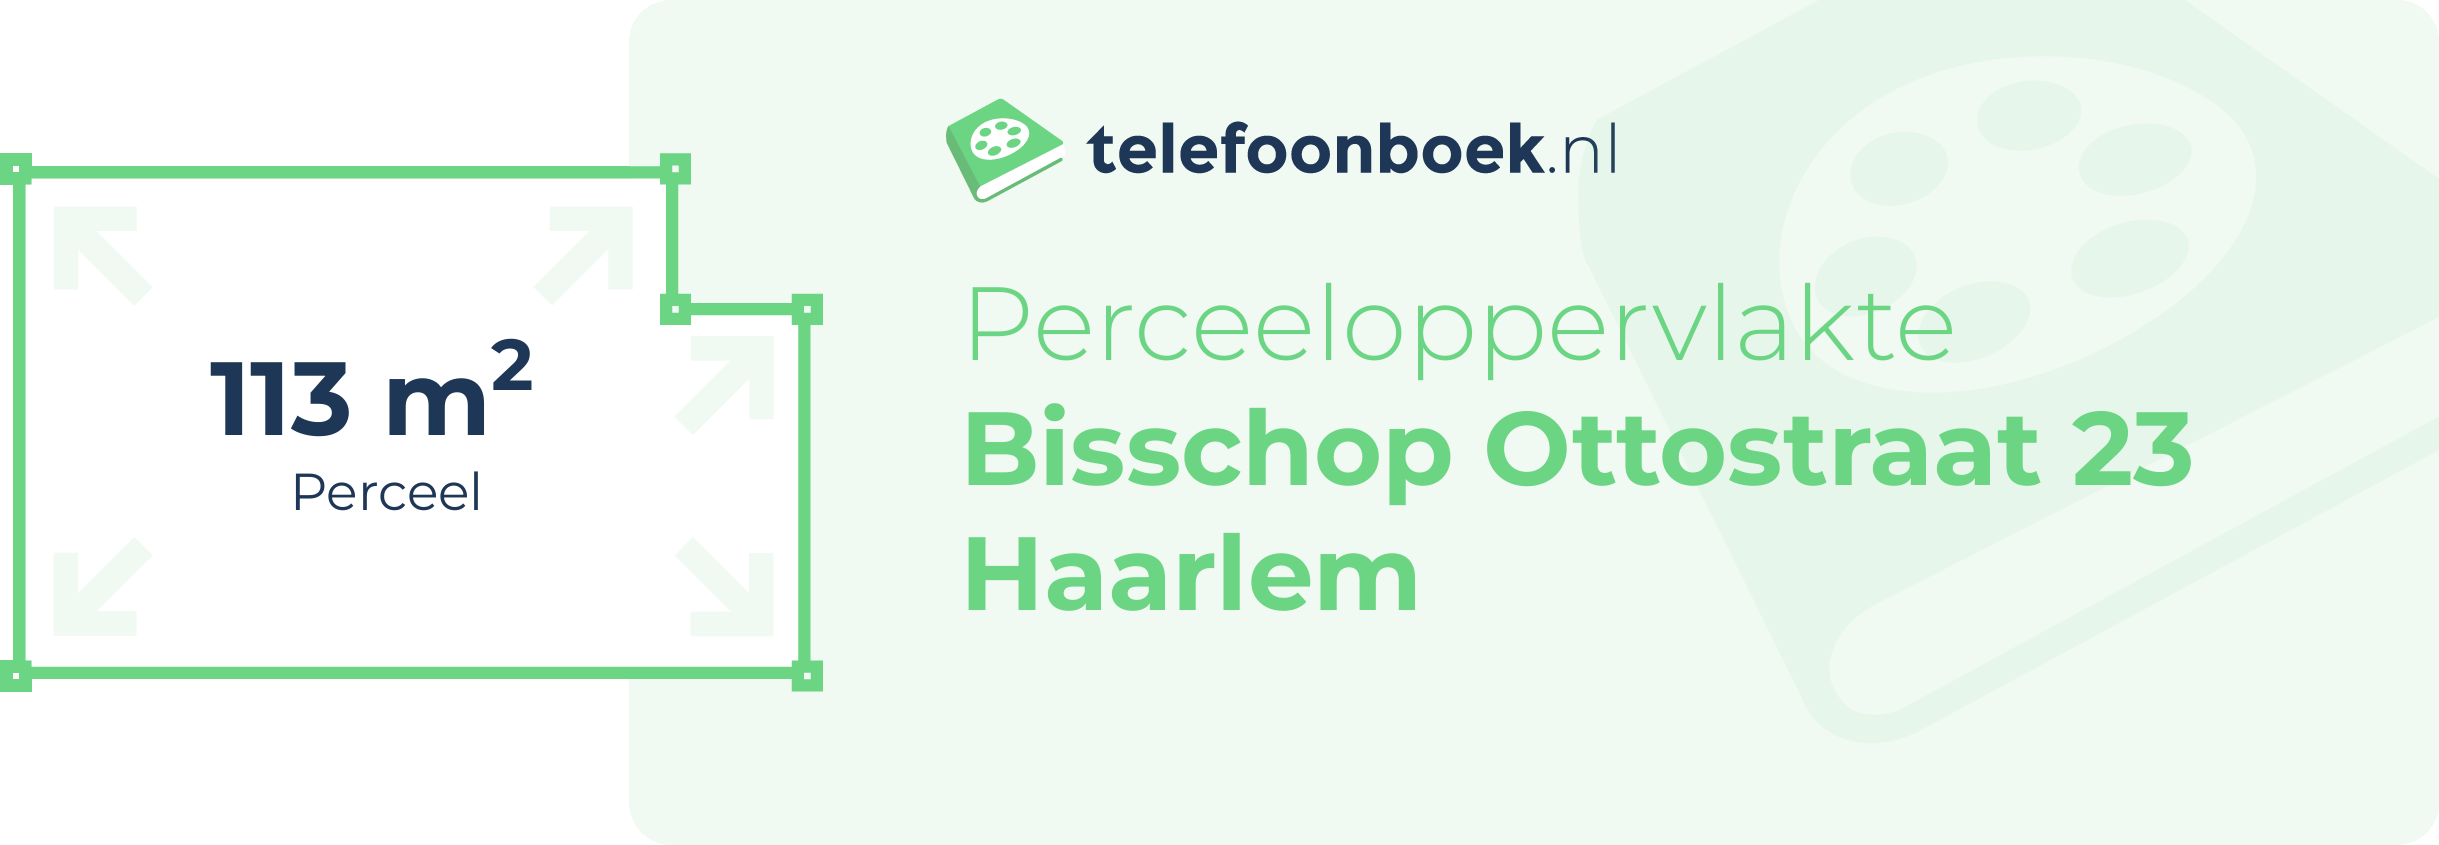 Perceeloppervlakte Bisschop Ottostraat 23 Haarlem